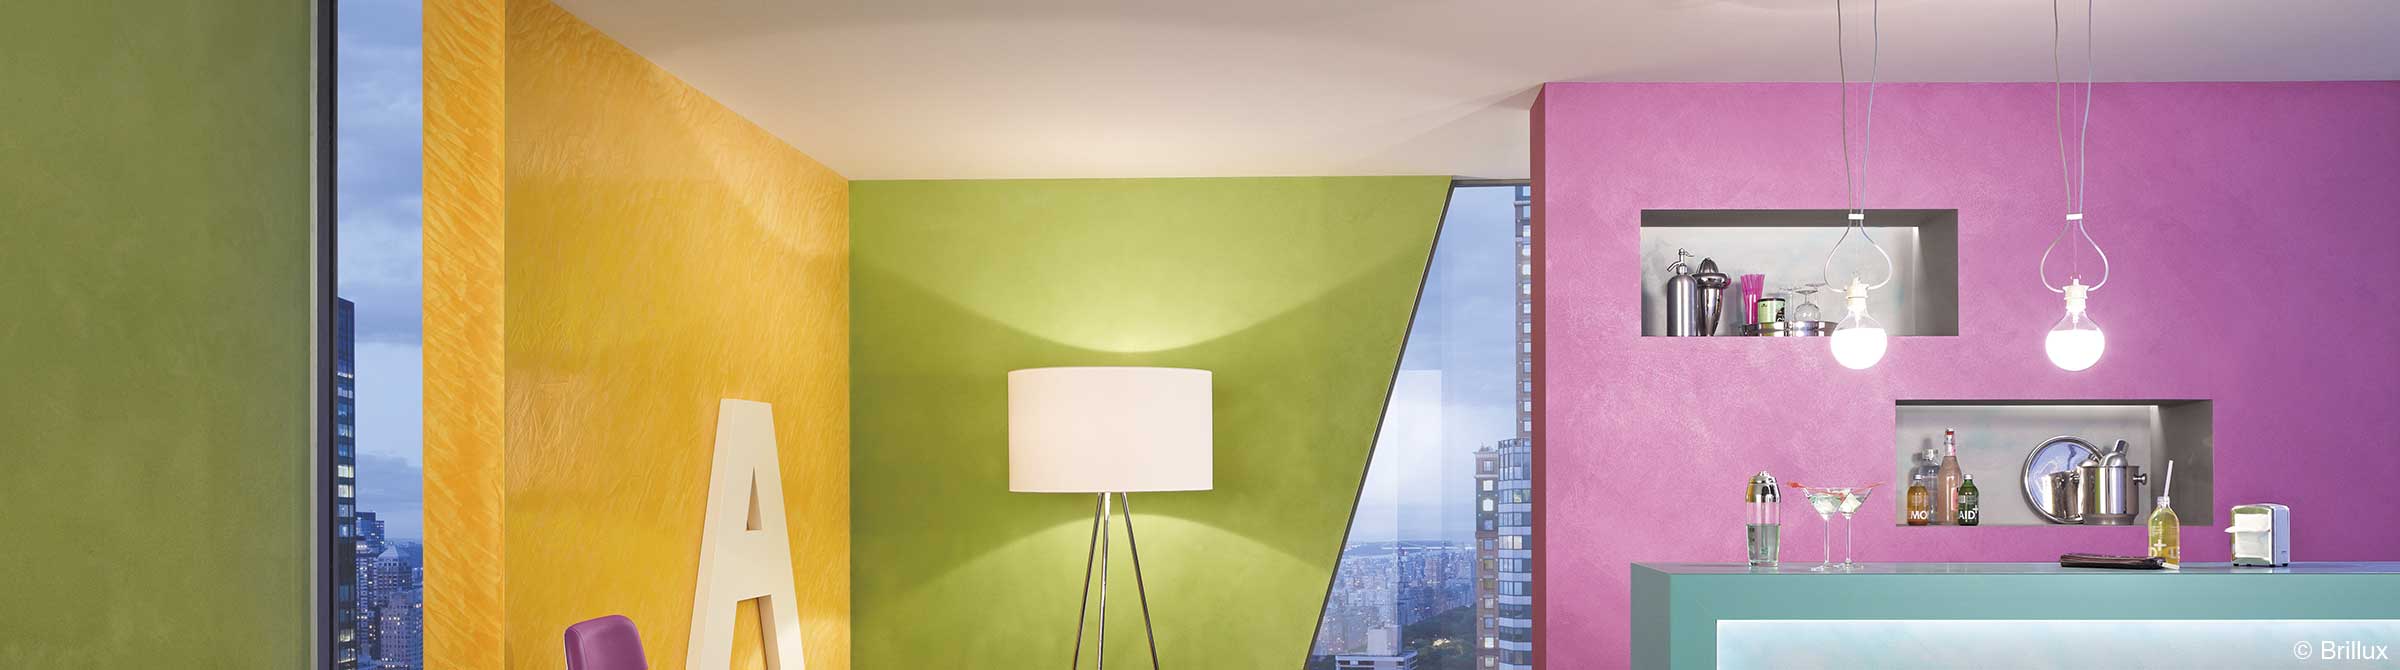 Moderne Wohnraumgestaltung in Bonbonfarben - kreativ und faszinierend